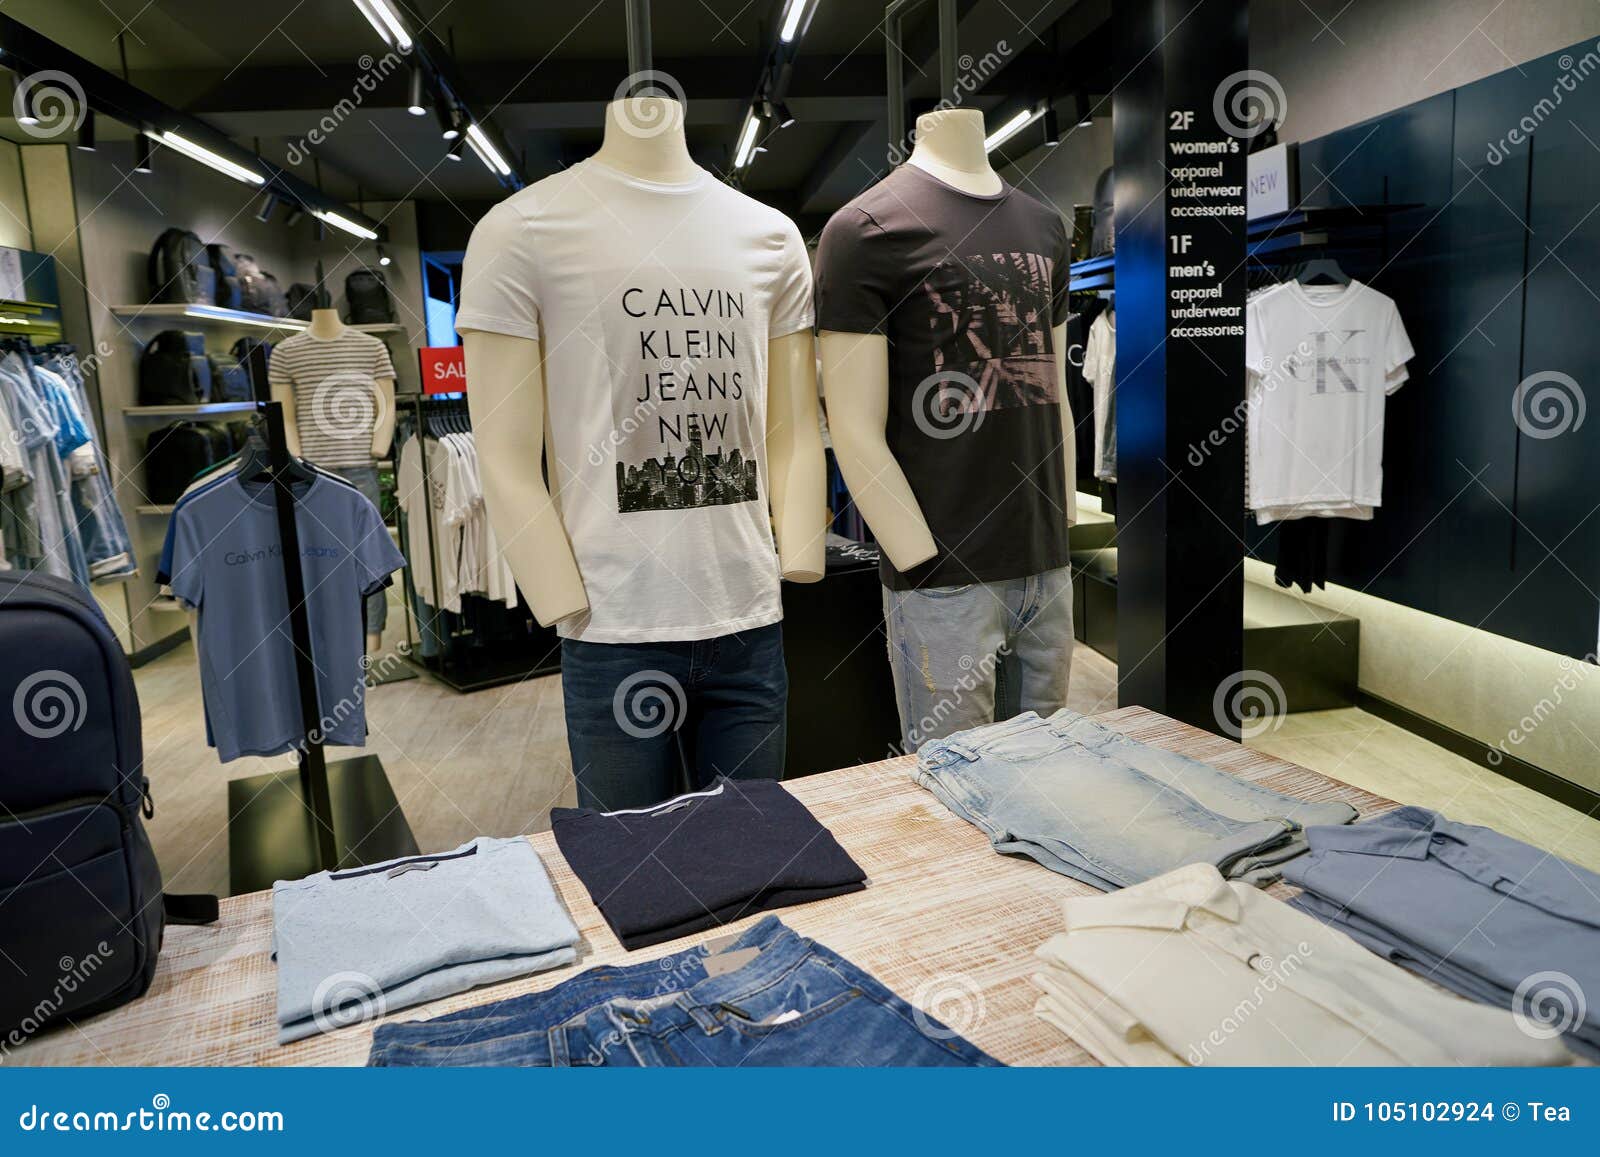 Calvin Klein Jeans redaktionelles stockbild. Bild von geschäft - 105102924